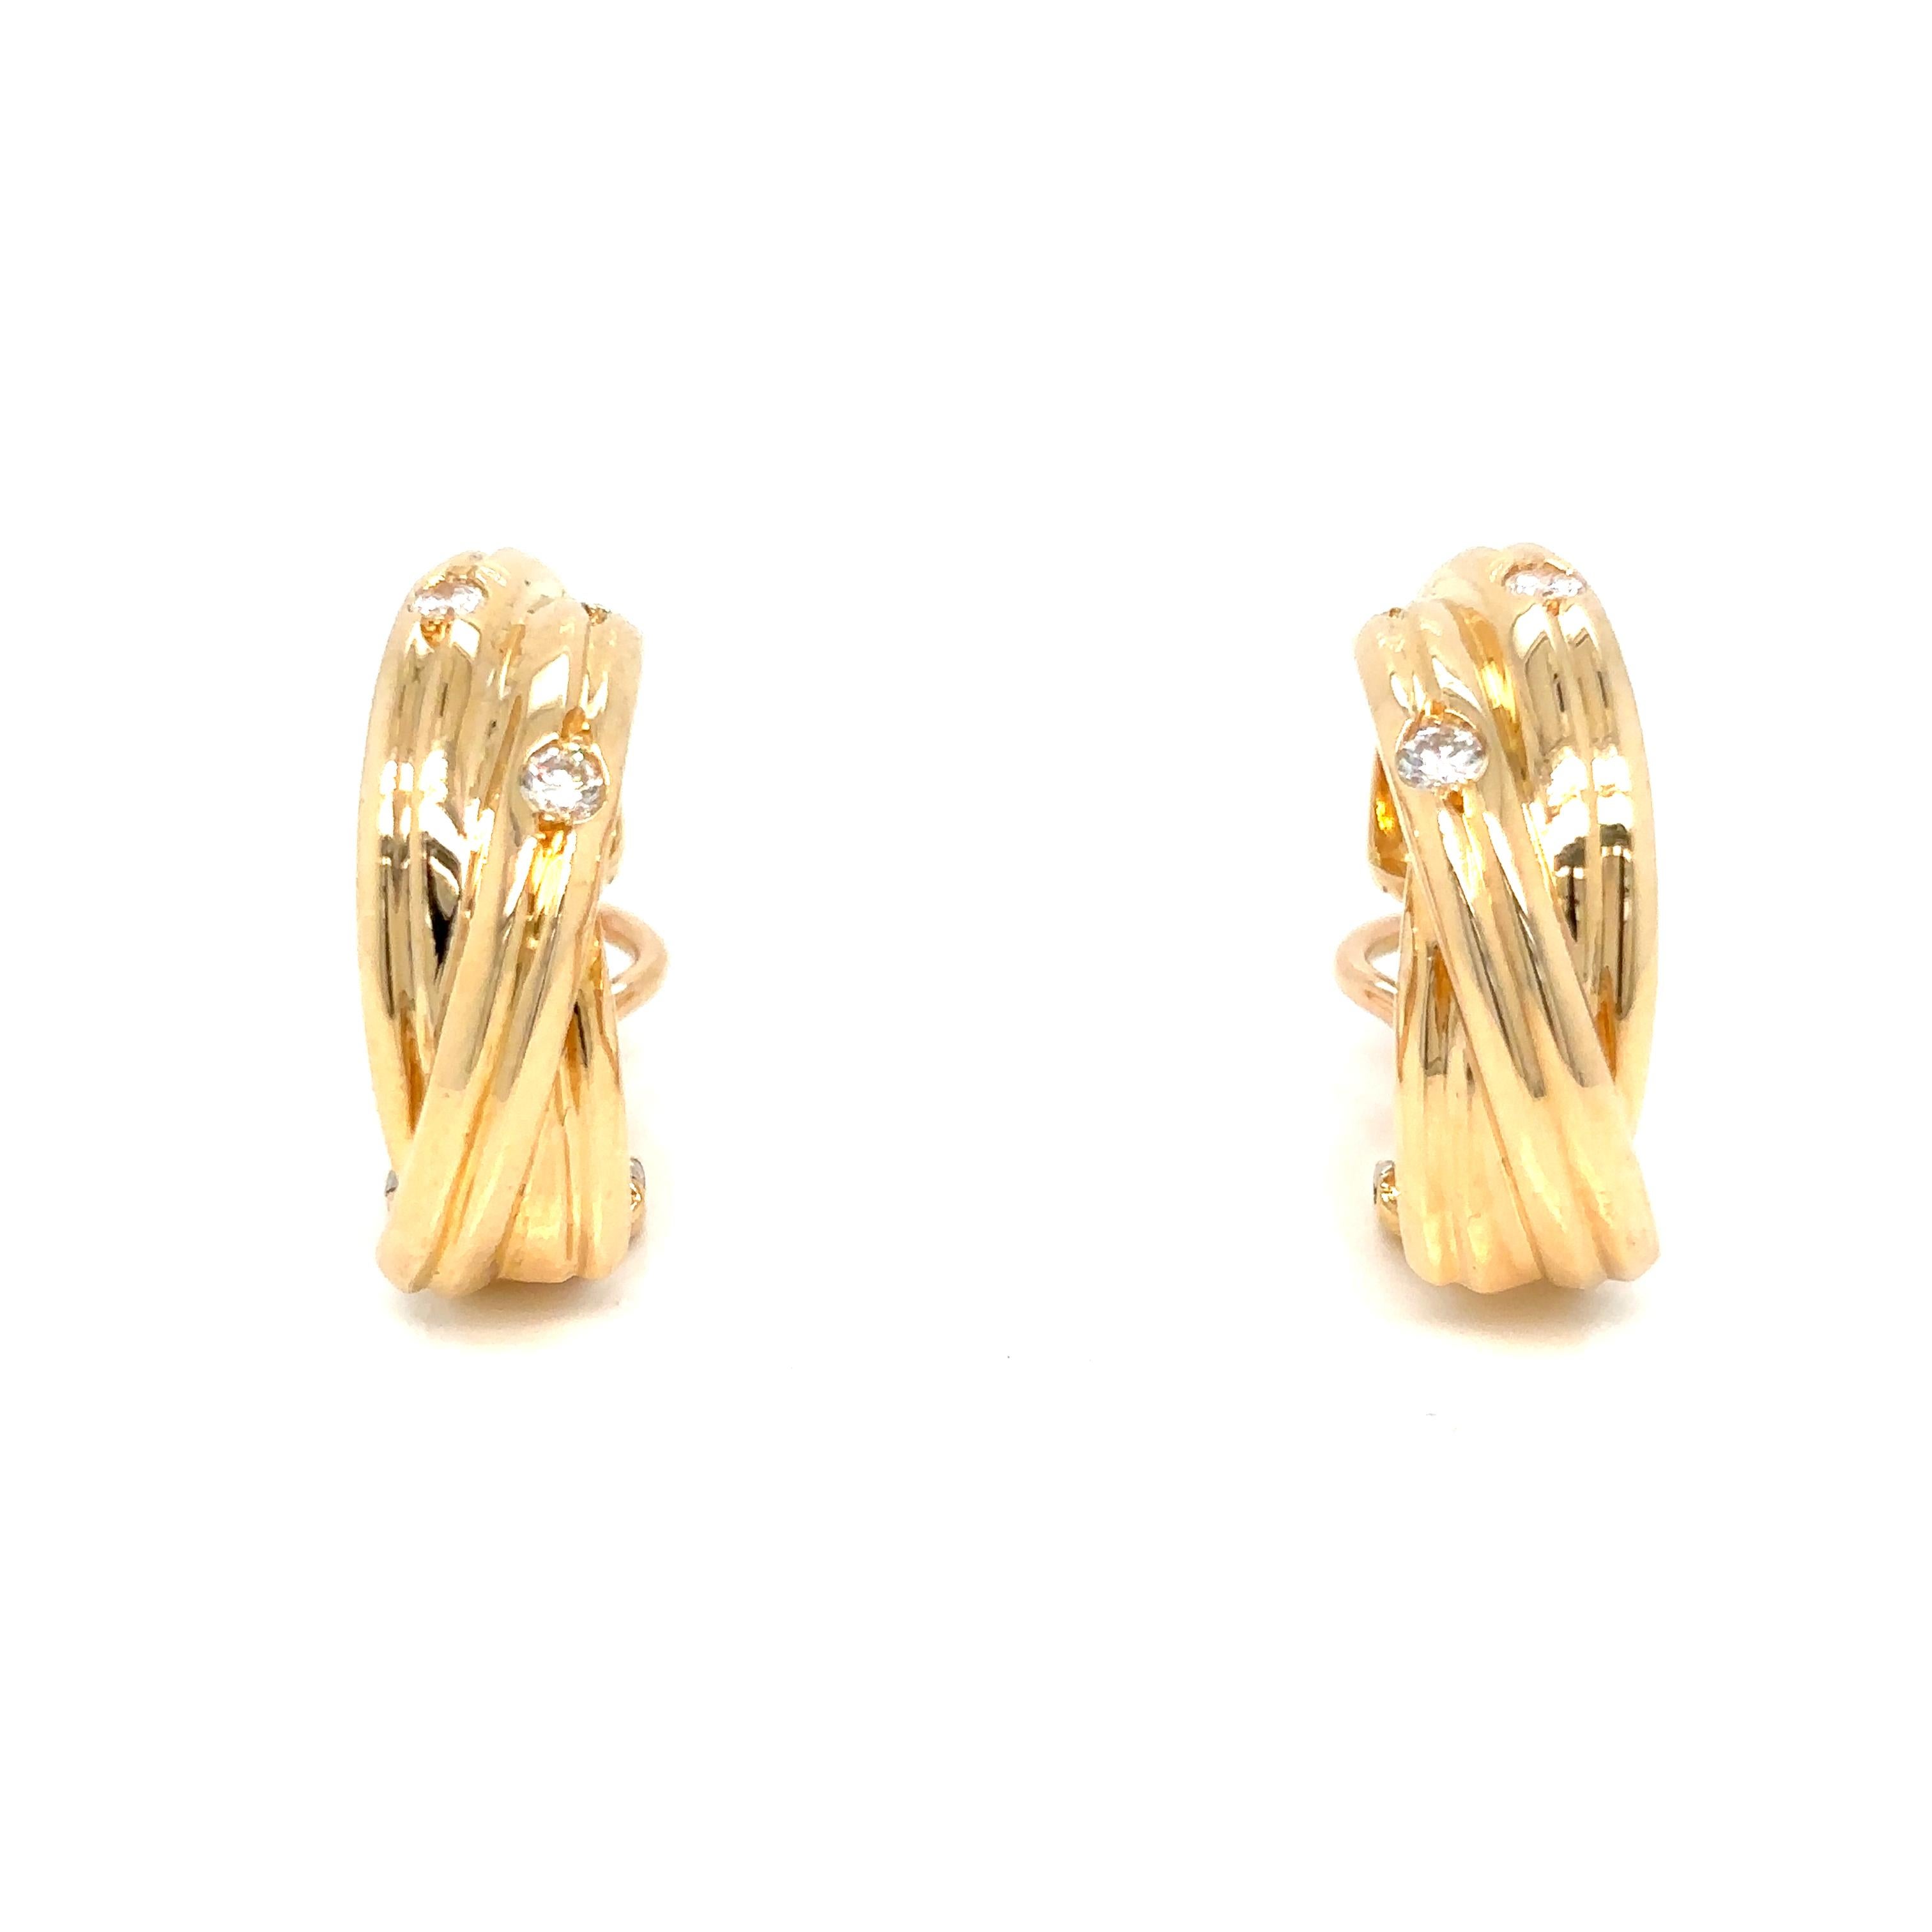 Cartier Trinity Diamond Hoop Earrings, jeweils drei ineinander verschlungene Halbringe aus 18 Karat Gelbgold, besetzt mit fünf runden Brillanten an einer Stift- und Scharnierbefestigung, in der Originalschachtel

Durchmesser 2cm
Breite 0,6